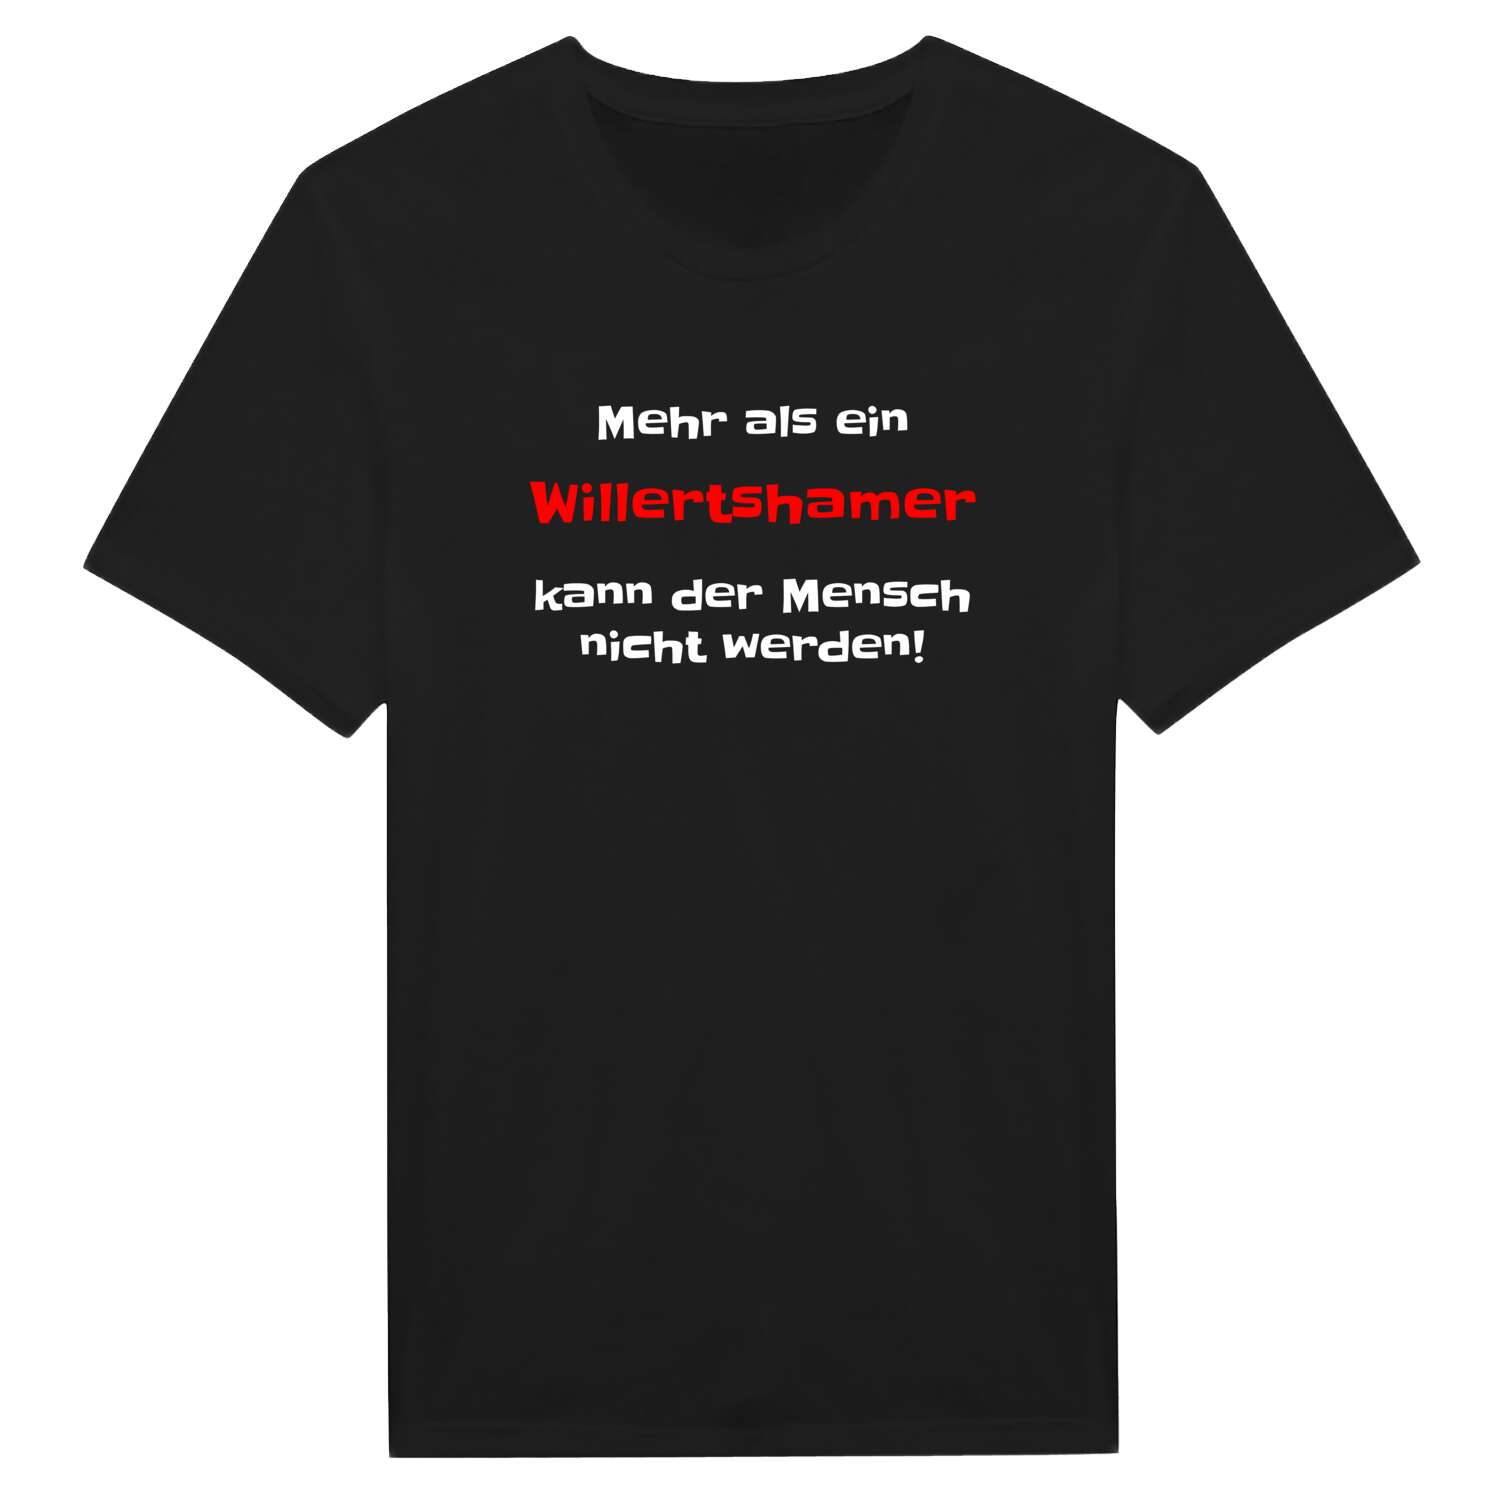 Willertsham T-Shirt »Mehr als ein«